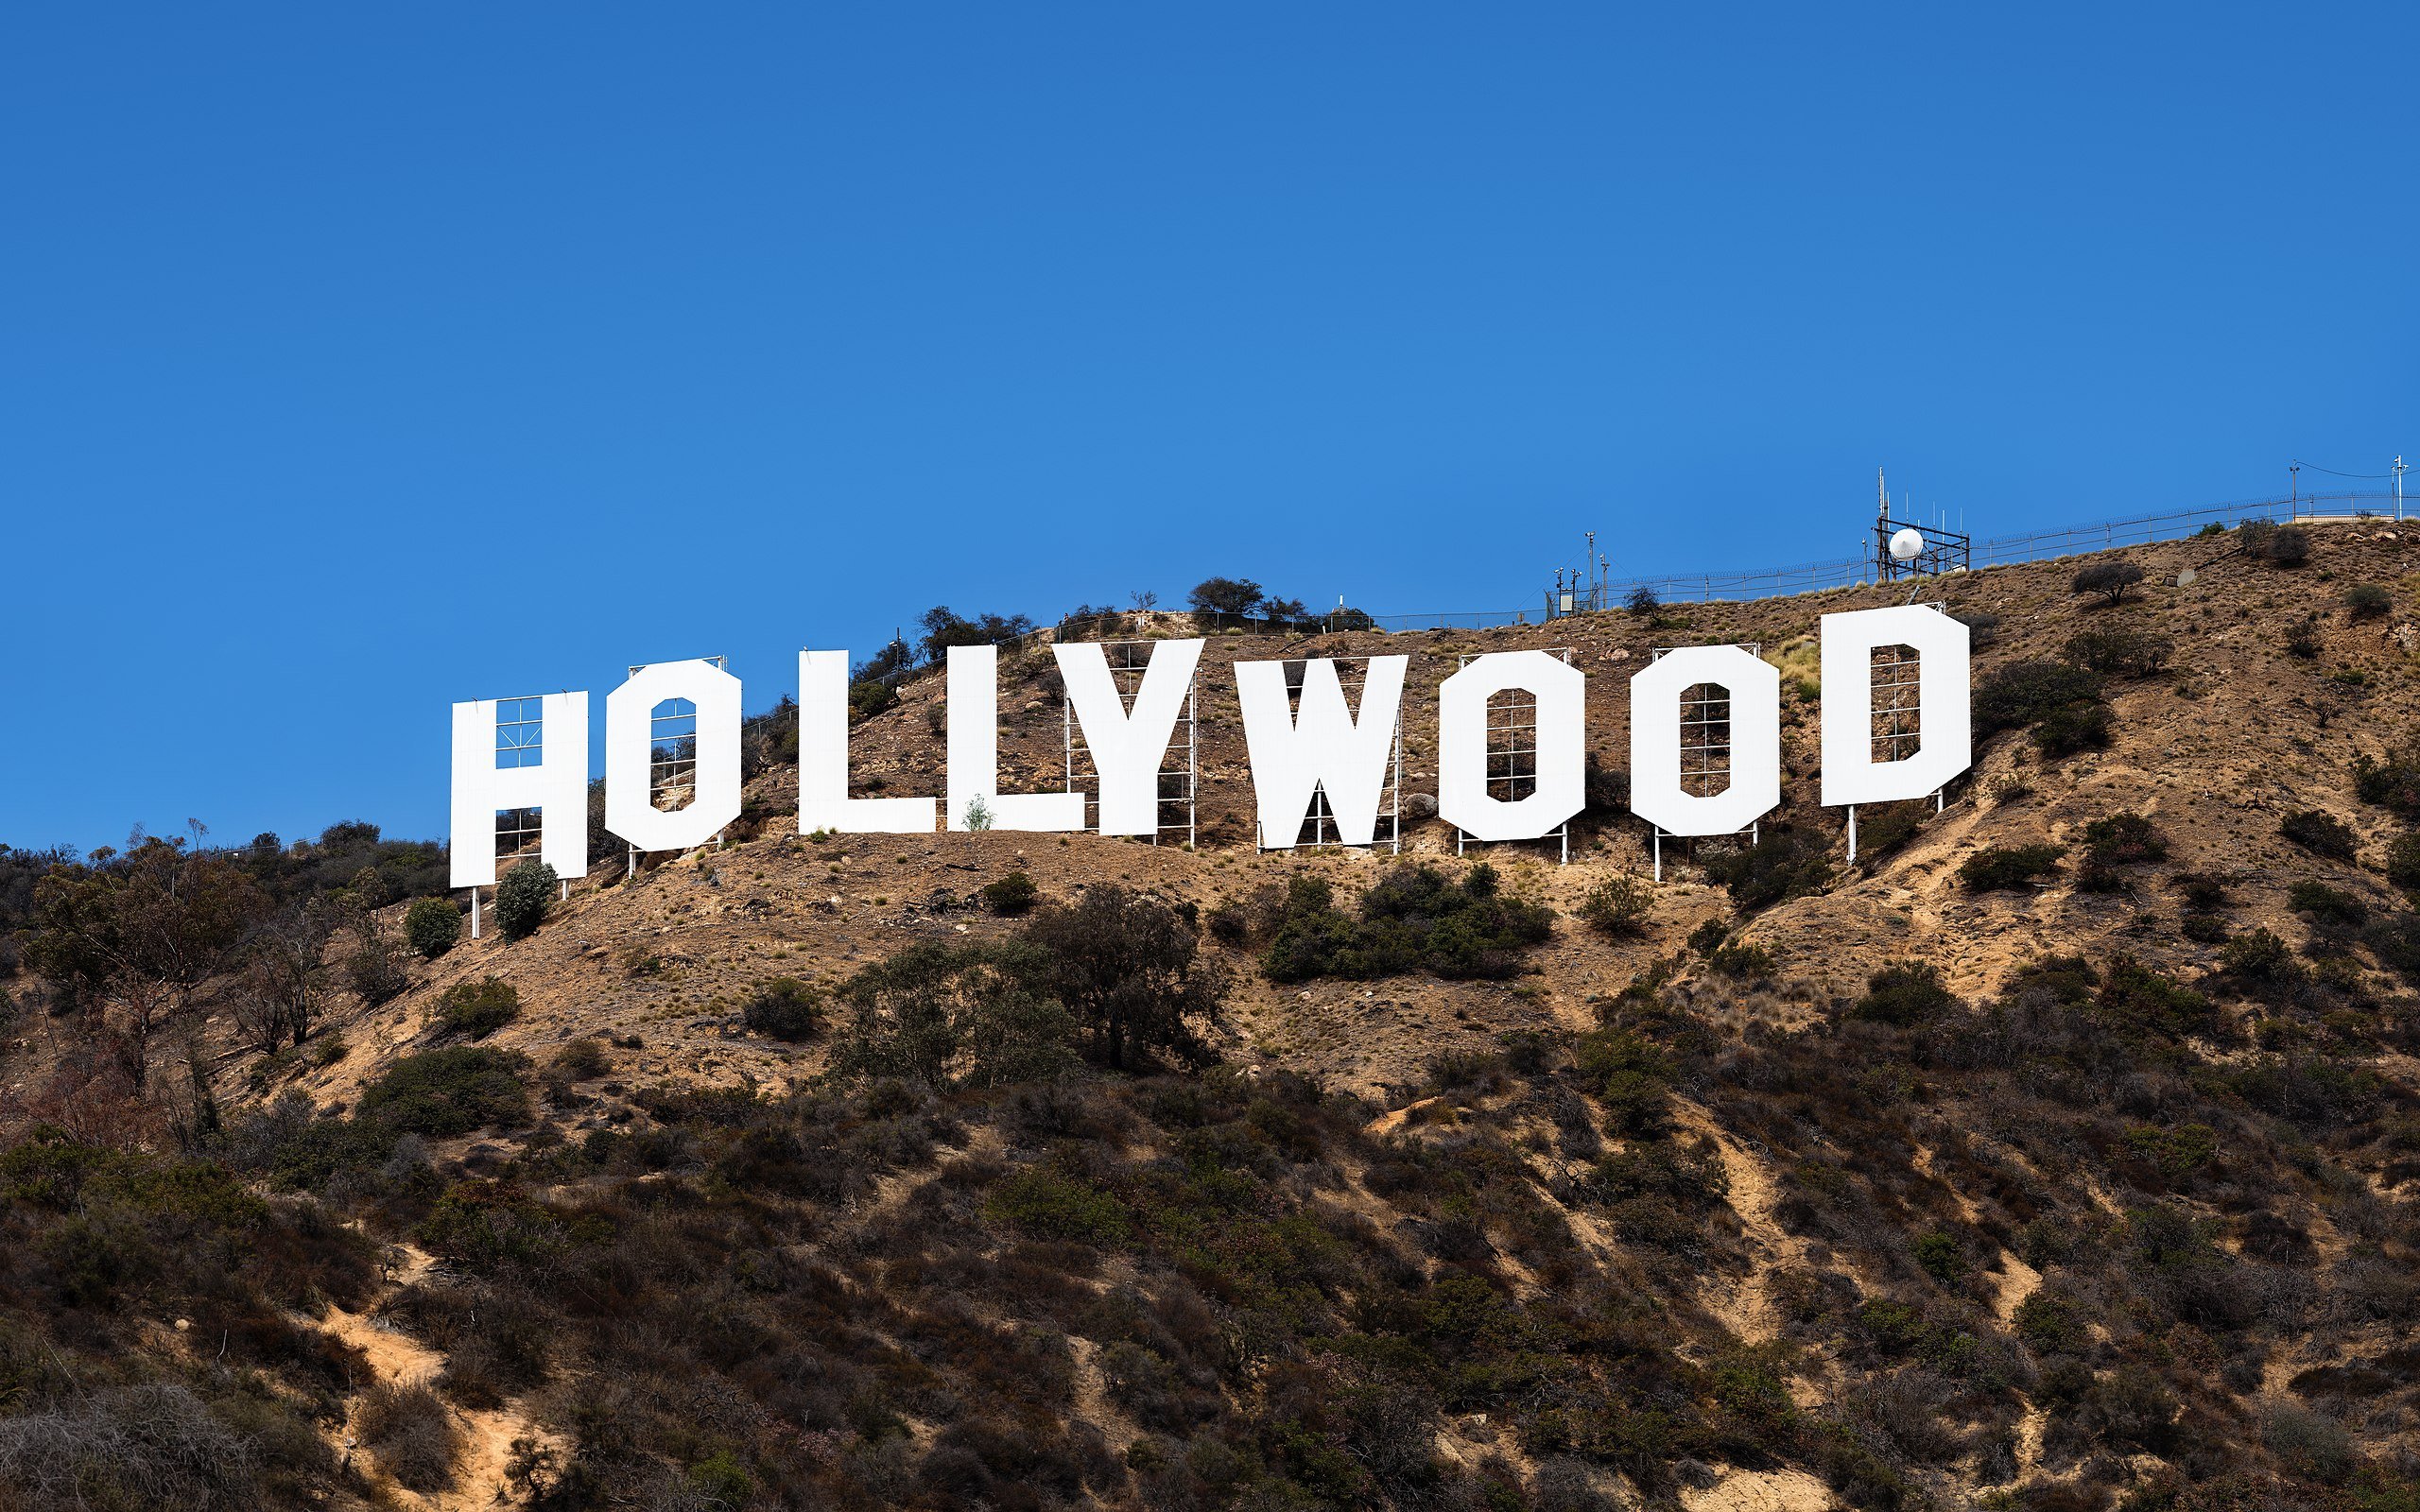 4 lugares para fotografar a letreiro de Hollywood em Los Angeles